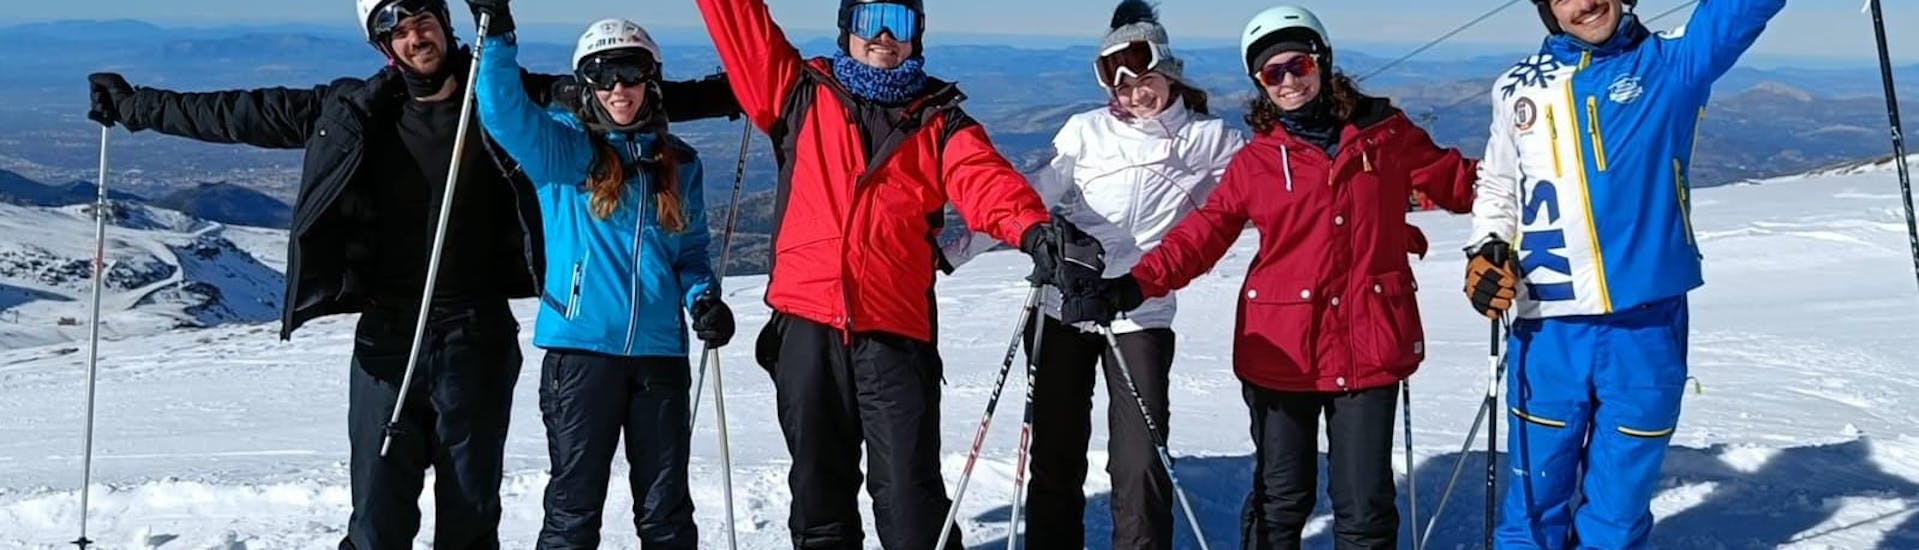 Clases de esquí particulares para adultos de todos los niveles (desde 13 años).